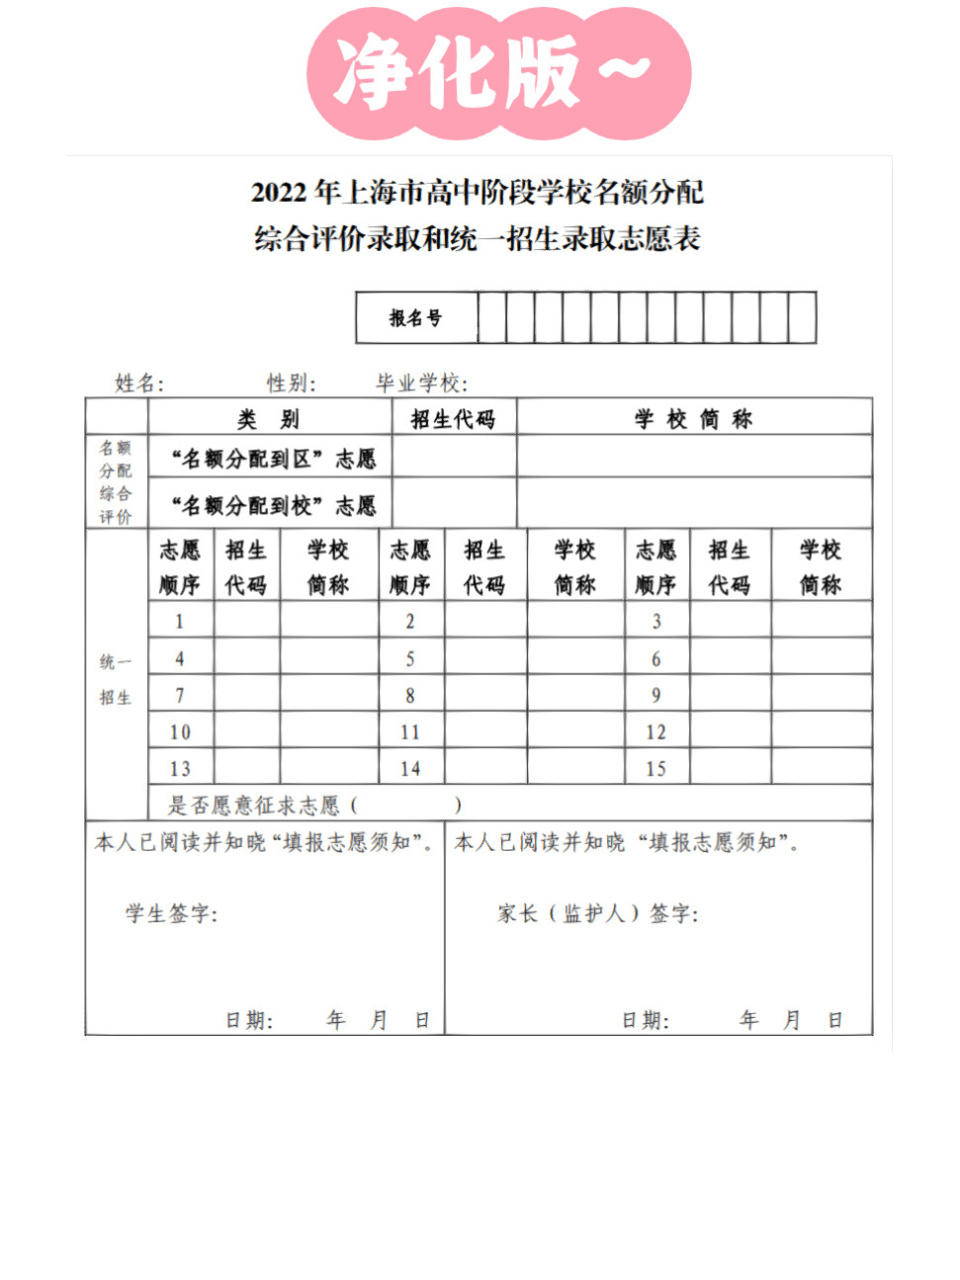 上海中考志愿填报表 一张图看懂上海中考志愿填报表, 家有初中生的